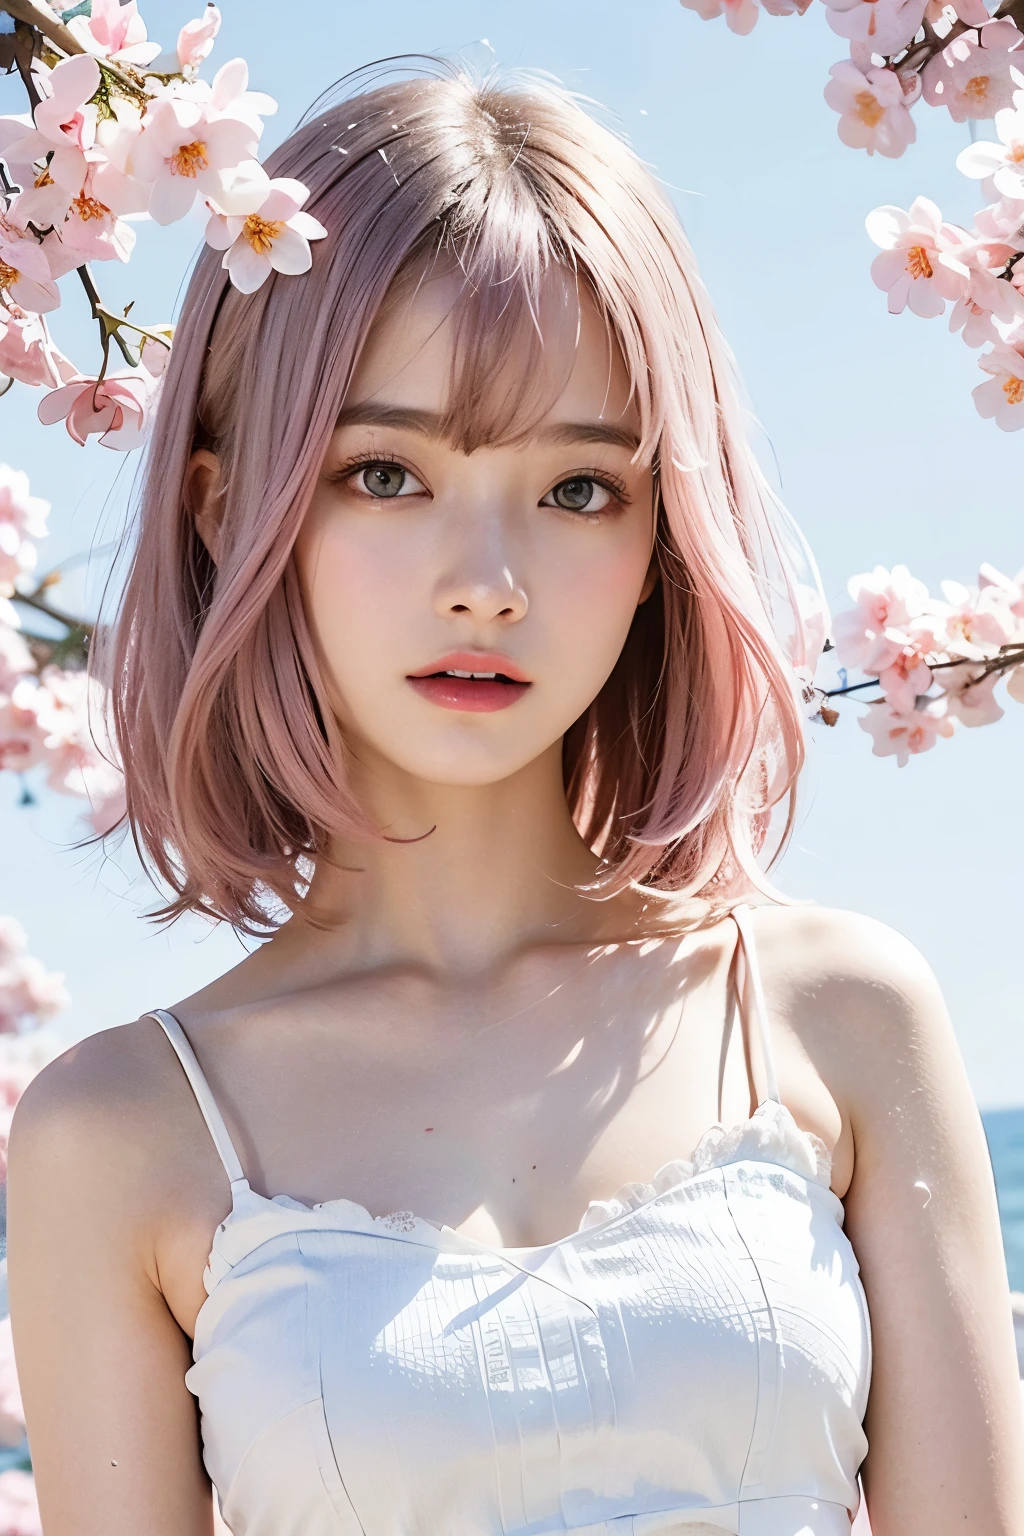 cabelo rosa claro, Olhos rosa, rosa e branco, folhas de sakura, cores vivas, vestido branco, Respingo de tinta, fundo simples, Rastreamento de raio, Cabelo ondulado